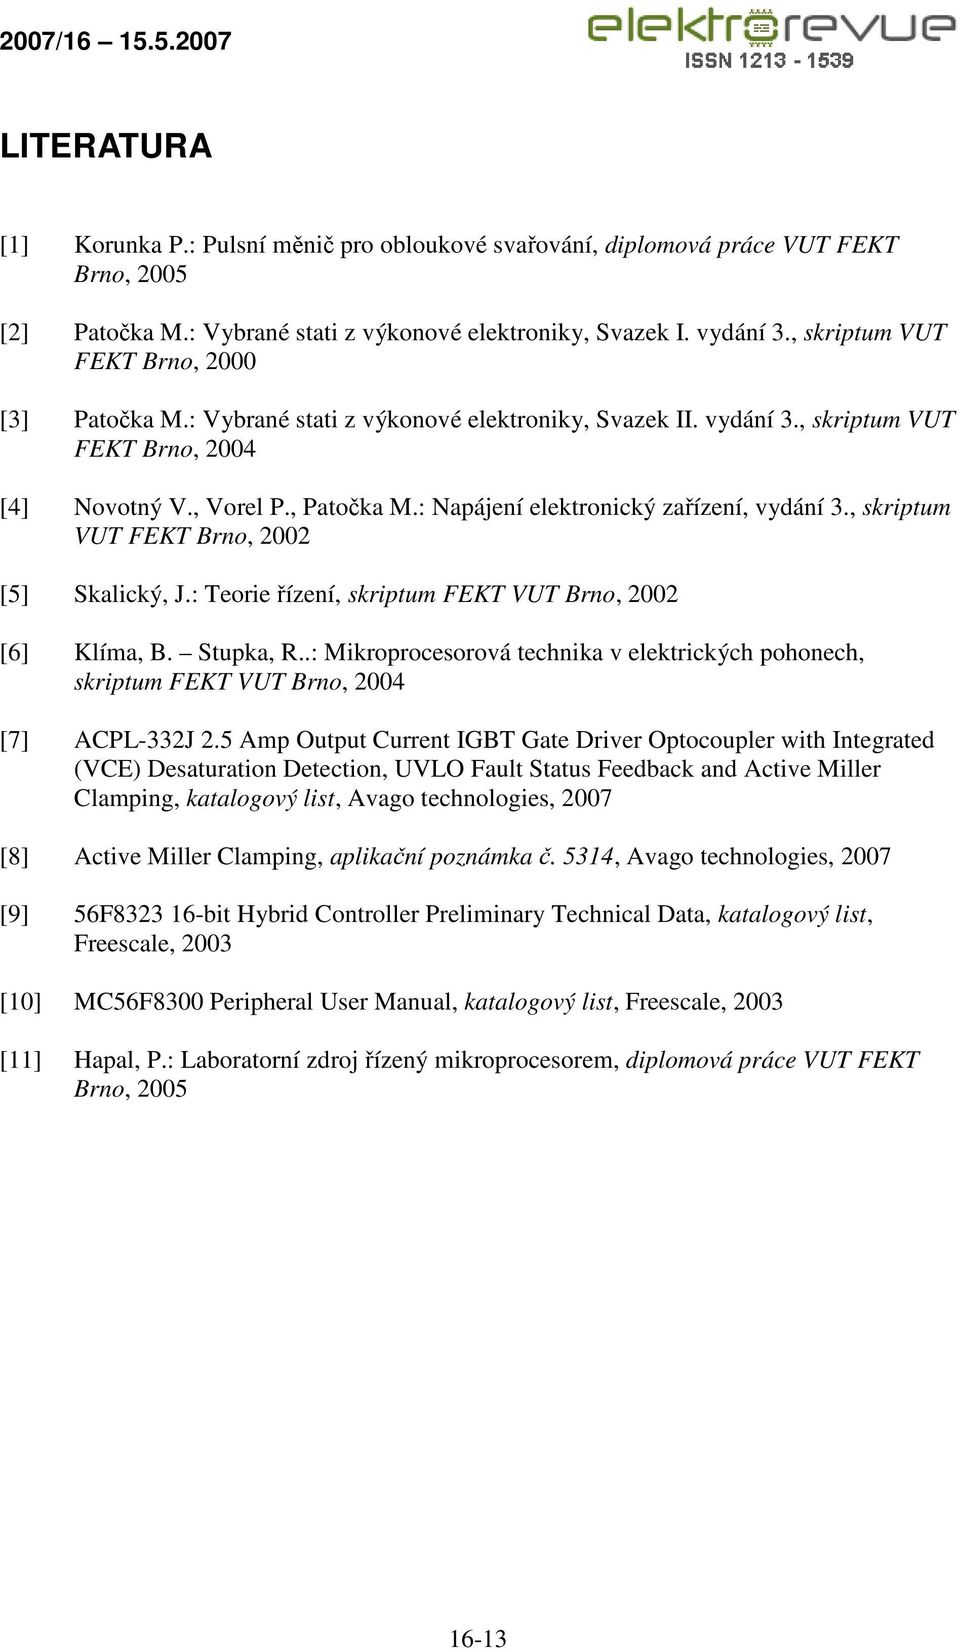 : Napájení elektronický zařízení, vydání 3., skriptum VUT FEKT Brno, 2002 [5] Skalický, J.: Teorie řízení, skriptum FEKT VUT Brno, 2002 [6] Klíma, B. Stupka, R.